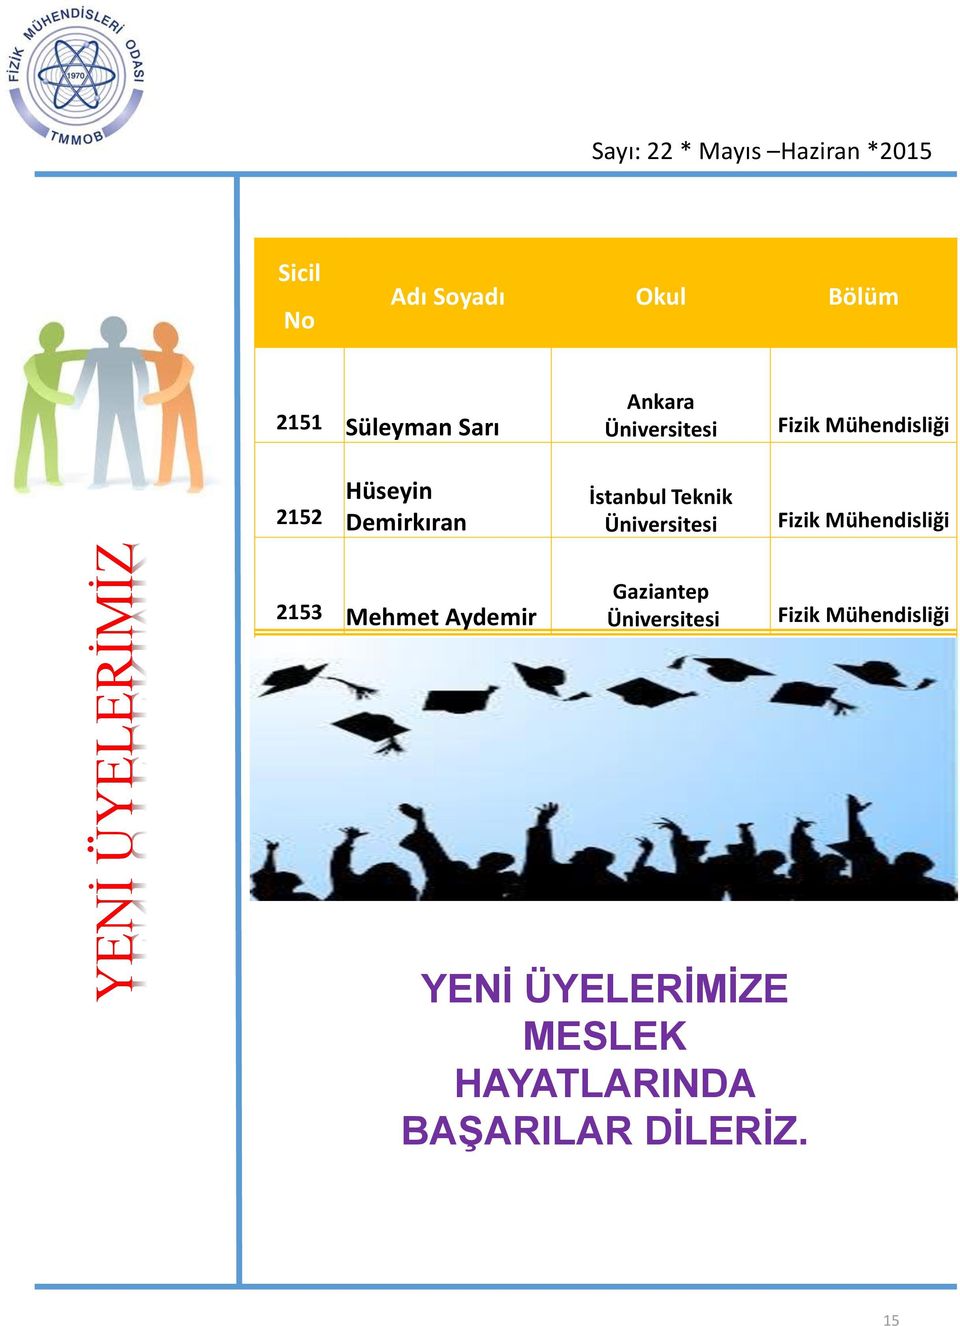 Üniversitesi Fizik Mühendisliği 2153 Mehmet Aydemir Gaziantep Üniversitesi